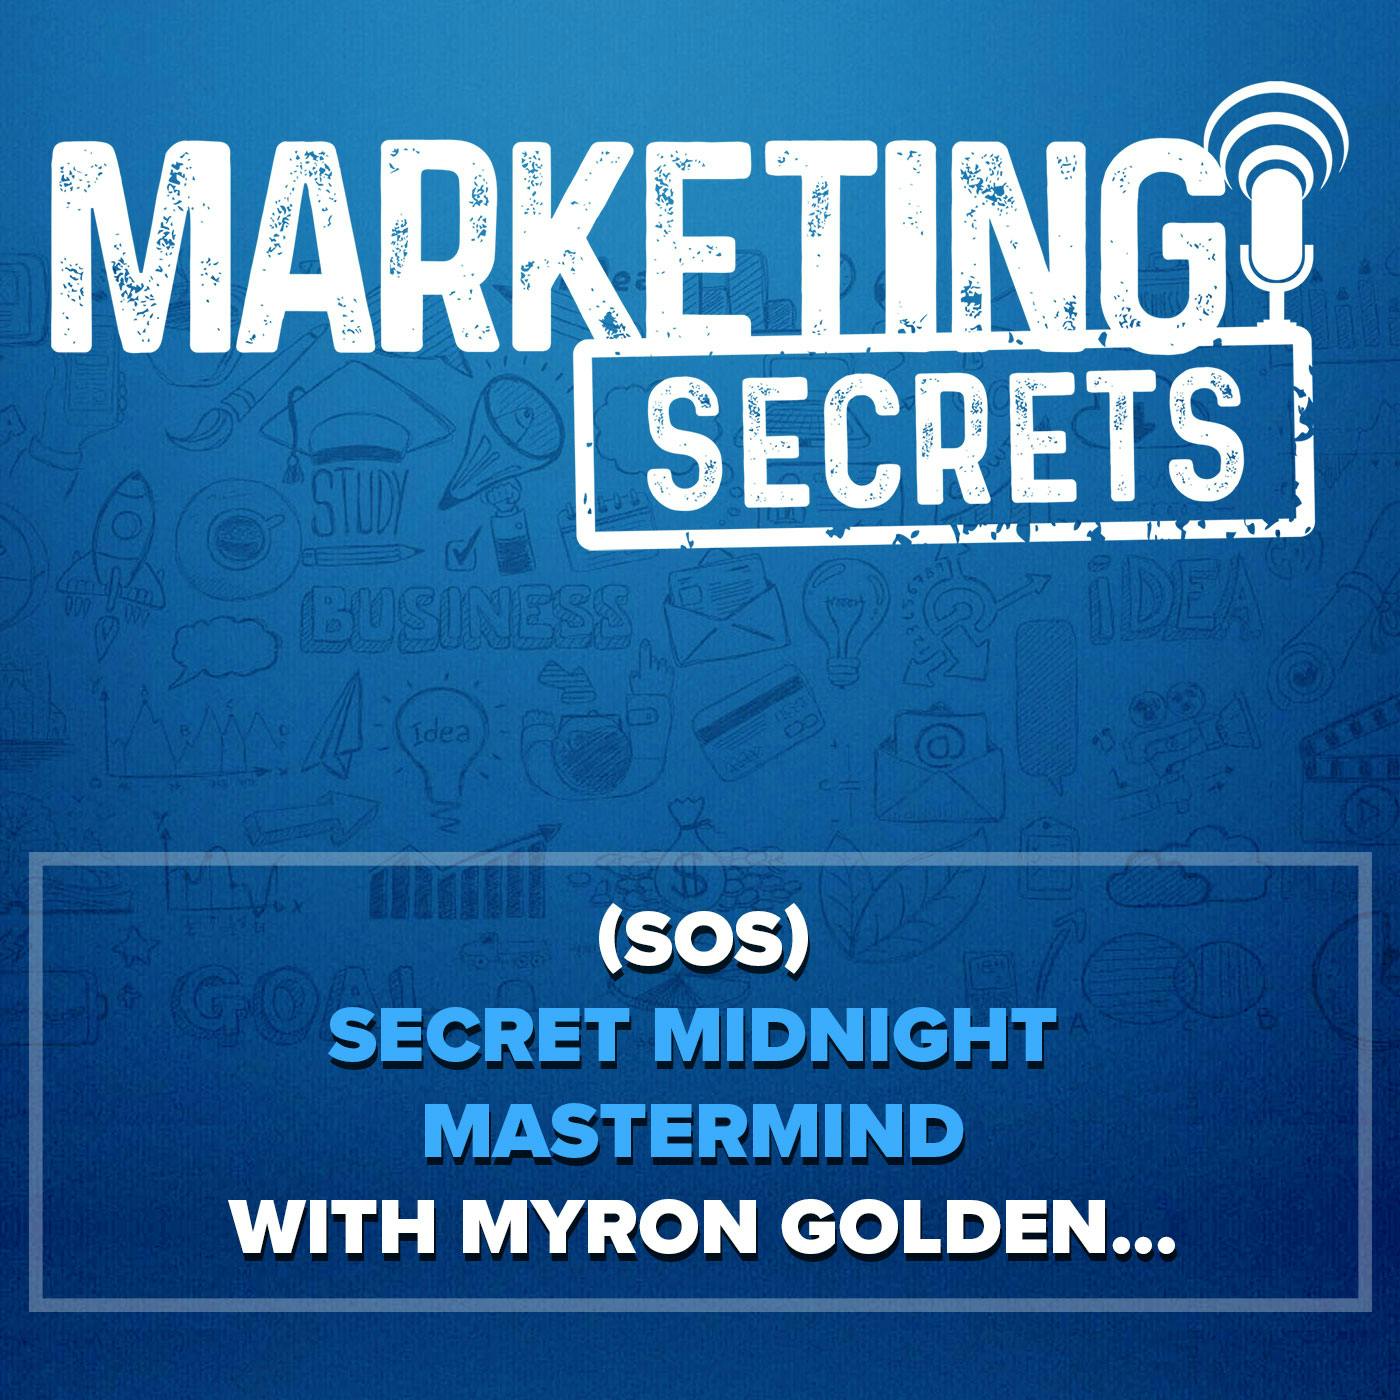 (MS) Secret Midnight Mastermind with Myron Golden...